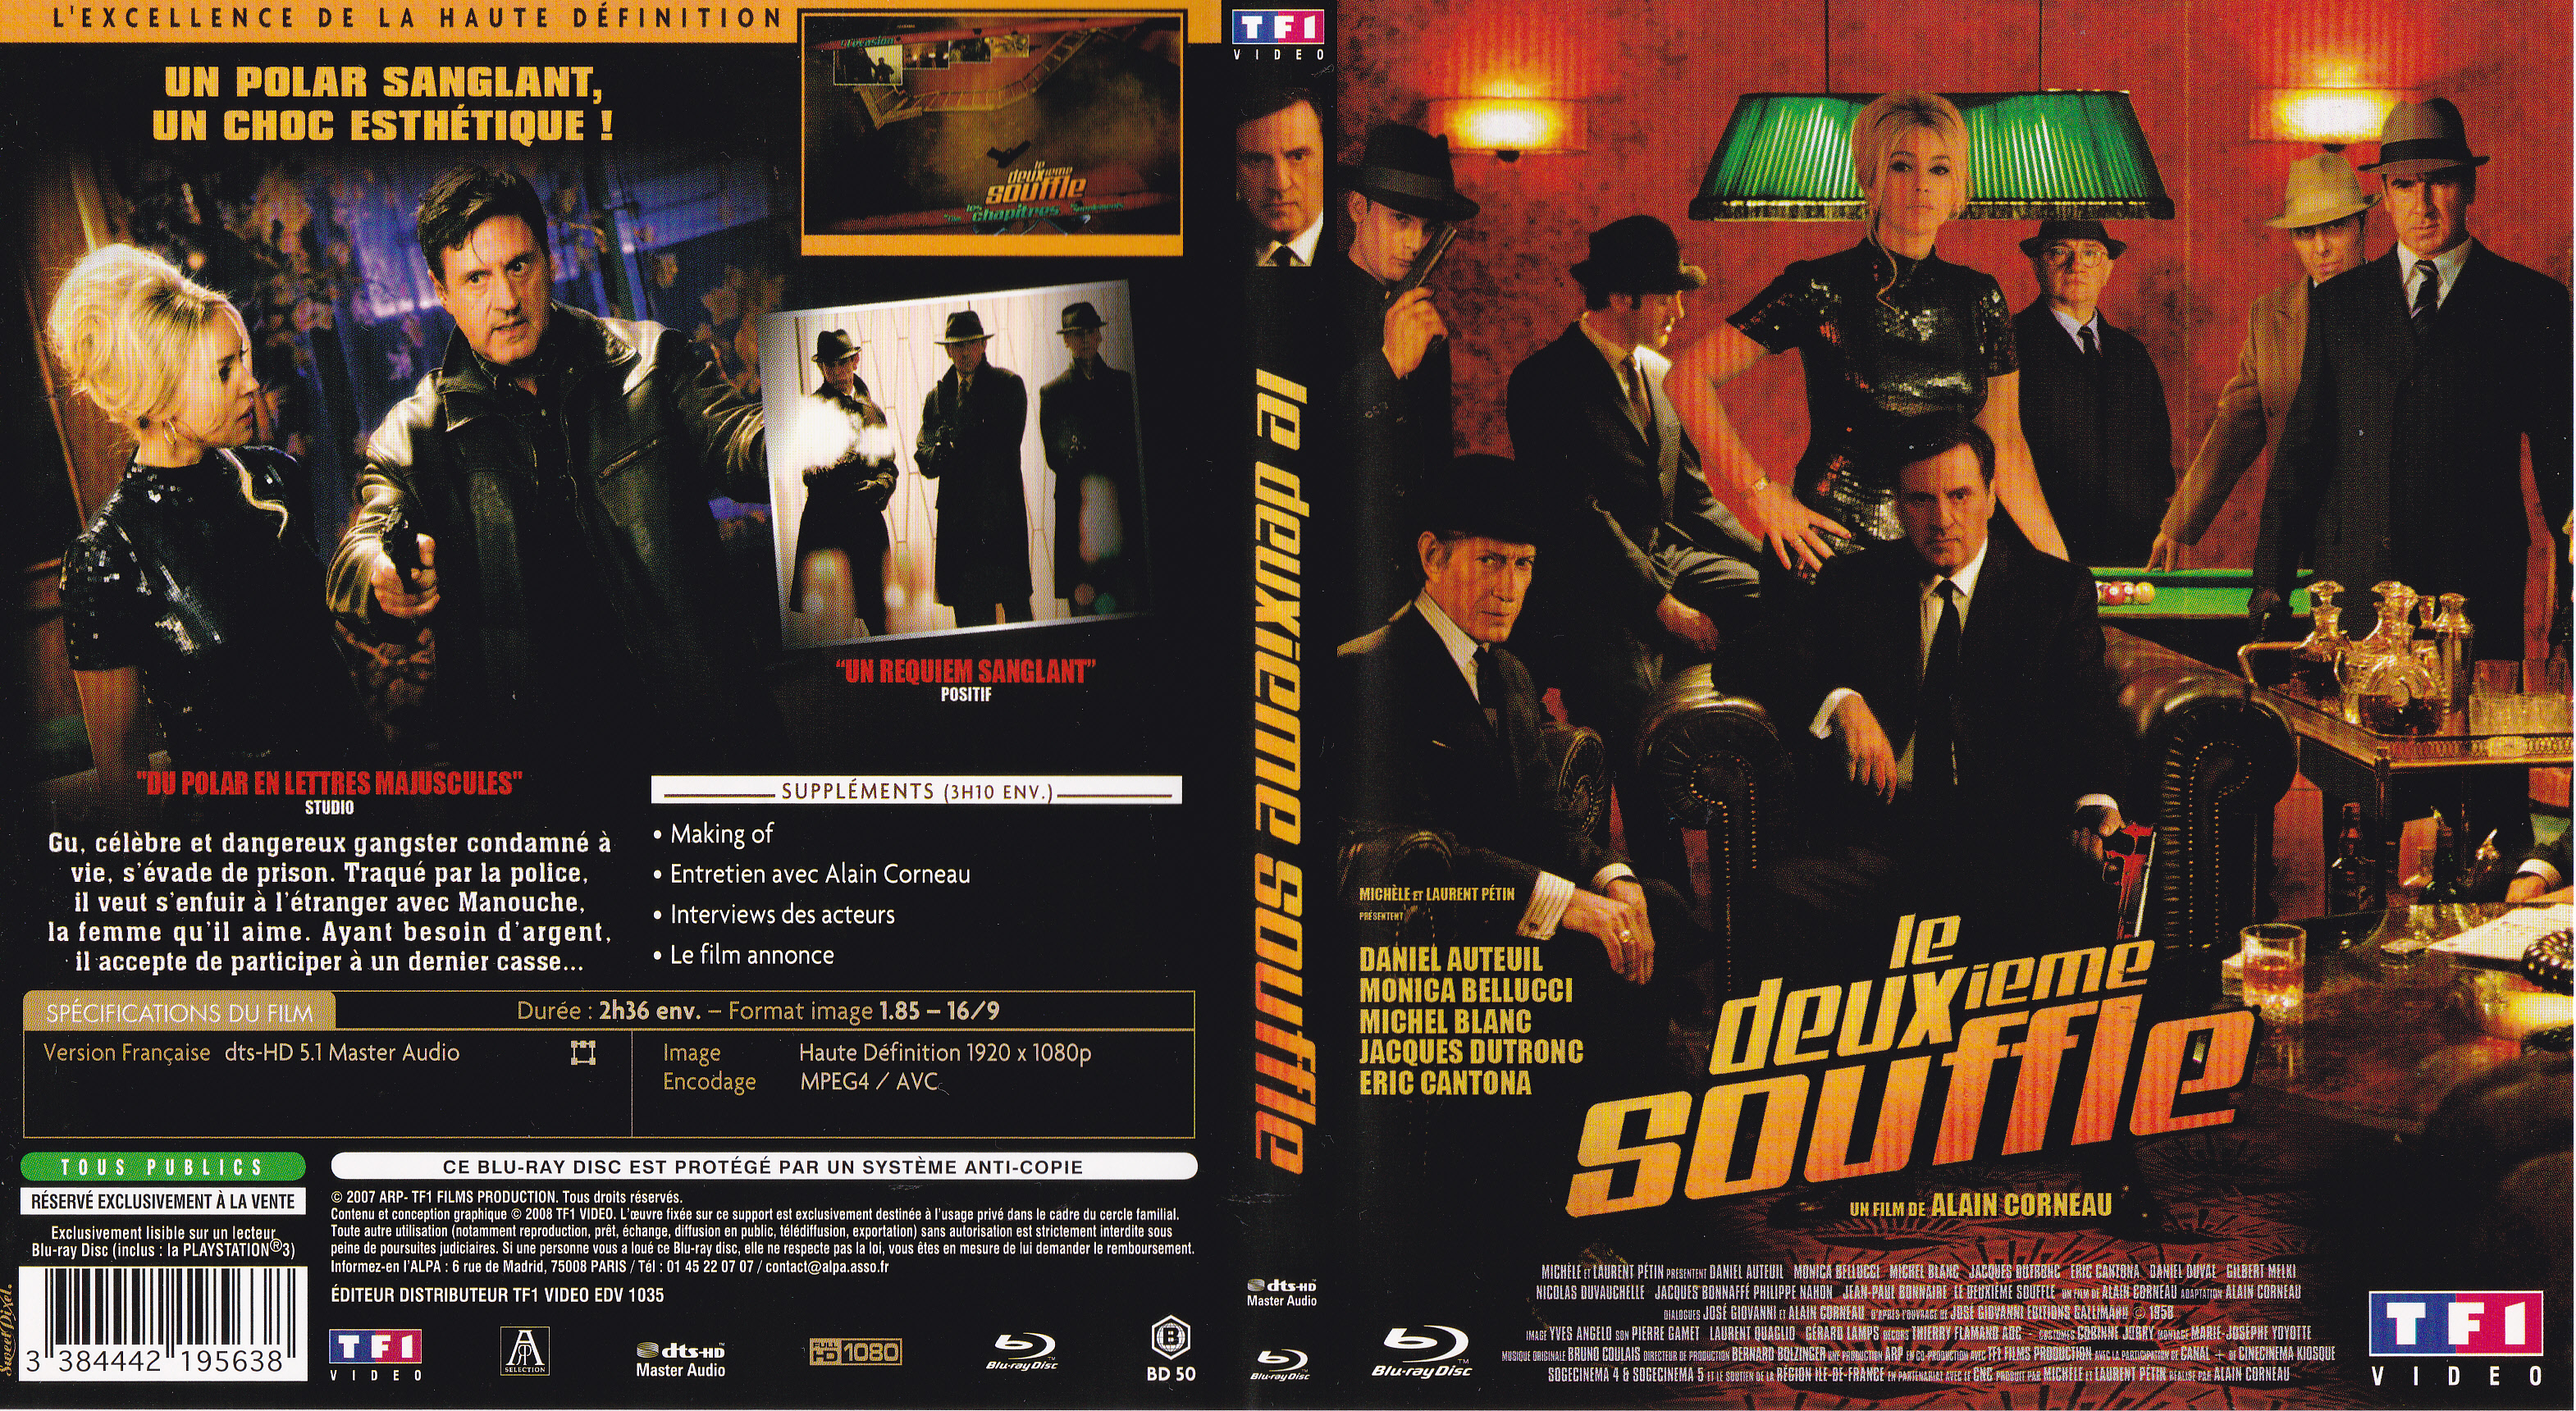 Jaquette DVD Le deuxieme souffle (2007) (BLU-RAY)